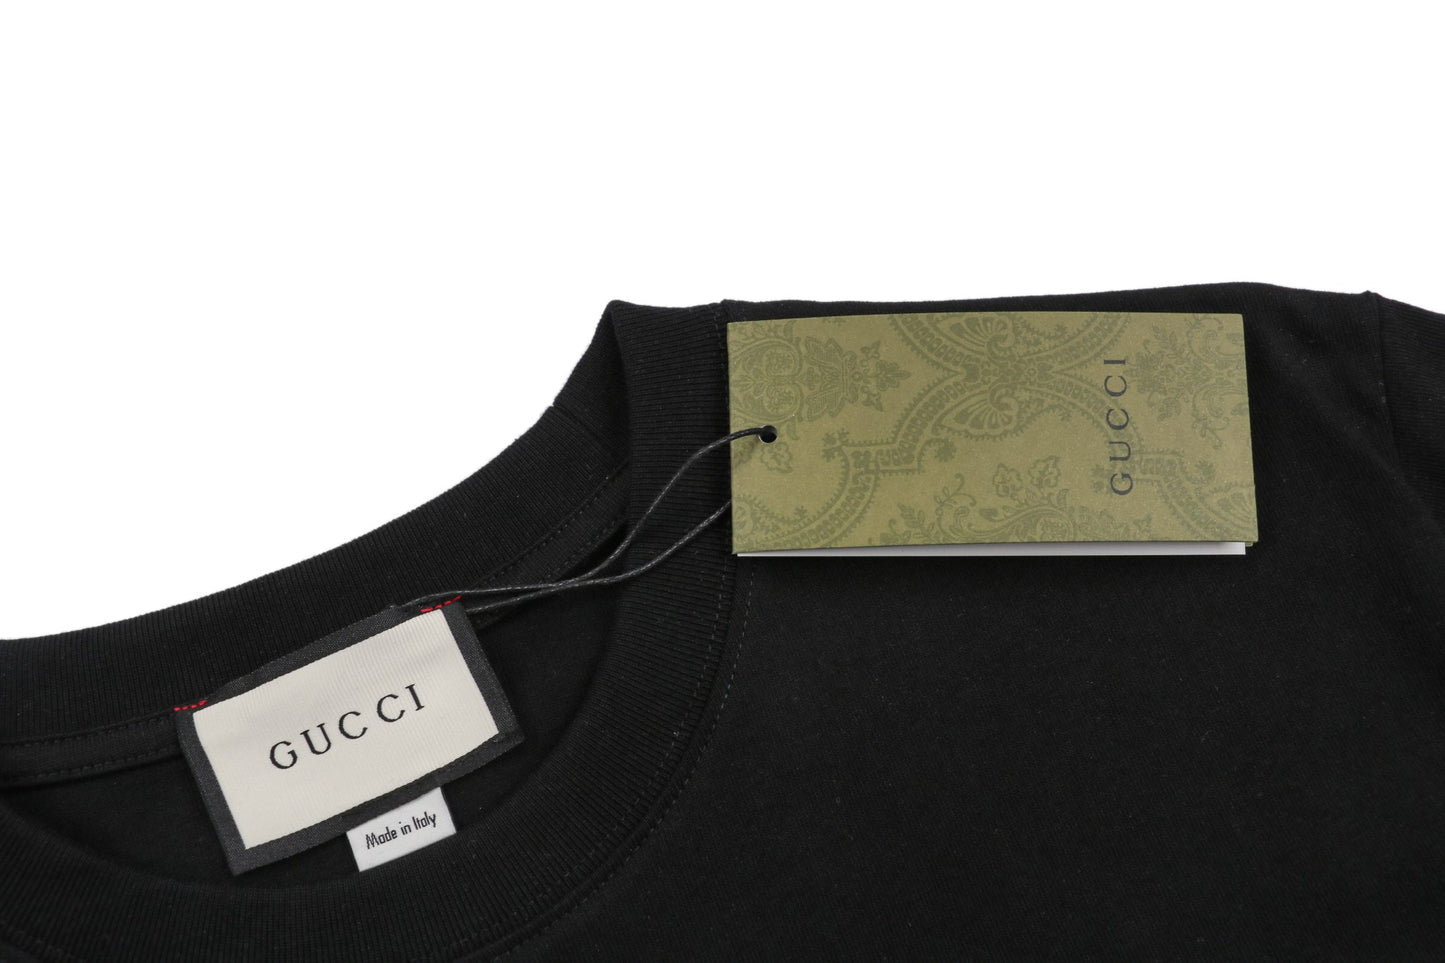 Gucc1 Round GG Print Cotton T-Shirt Black